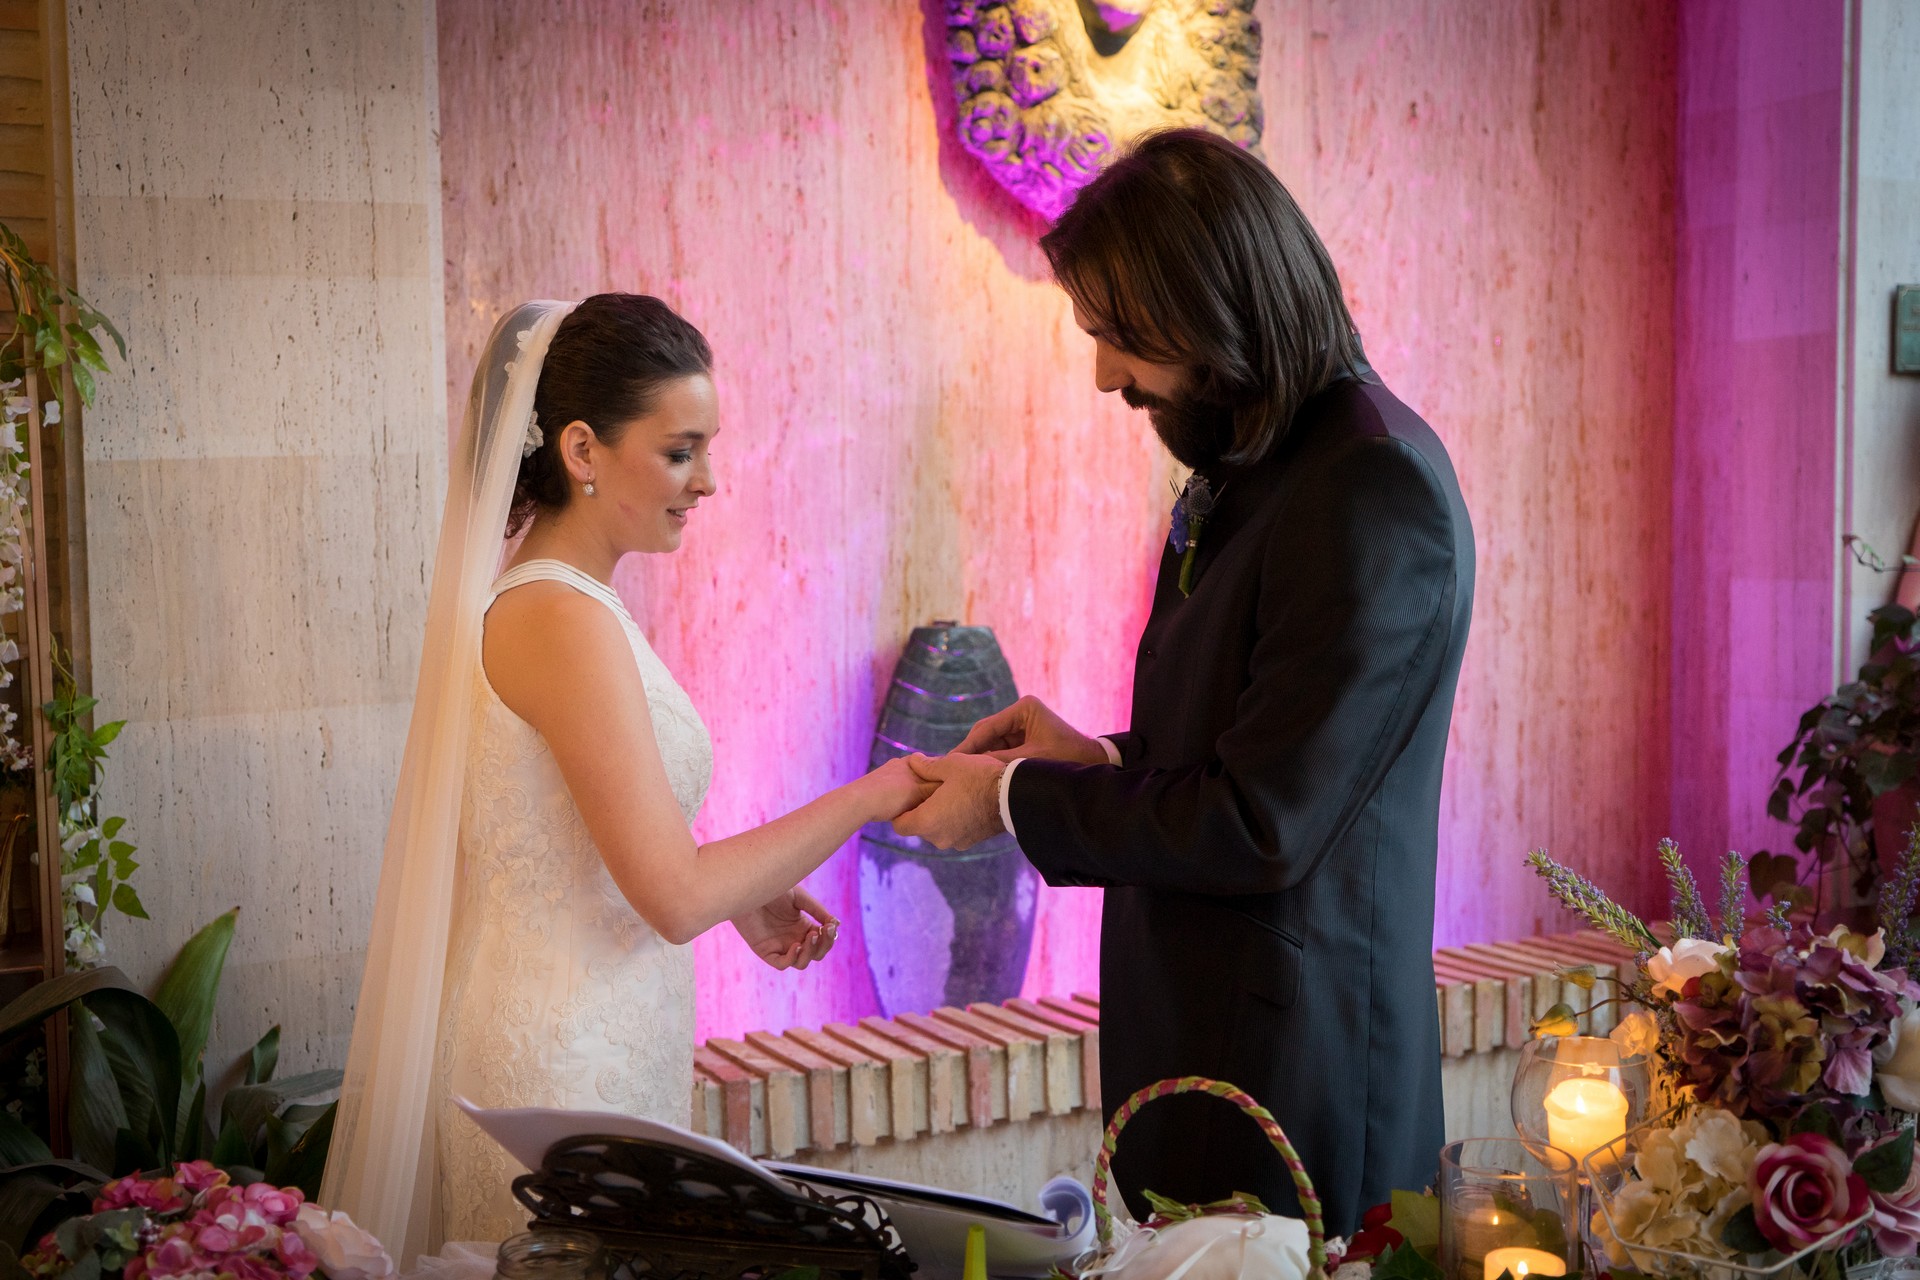 El novio poniendo el anillo a la novia como parte de la ceremonia de la boda. Torres & García estaba allí para grabar el vídeo y hacer las fotos de la boda.